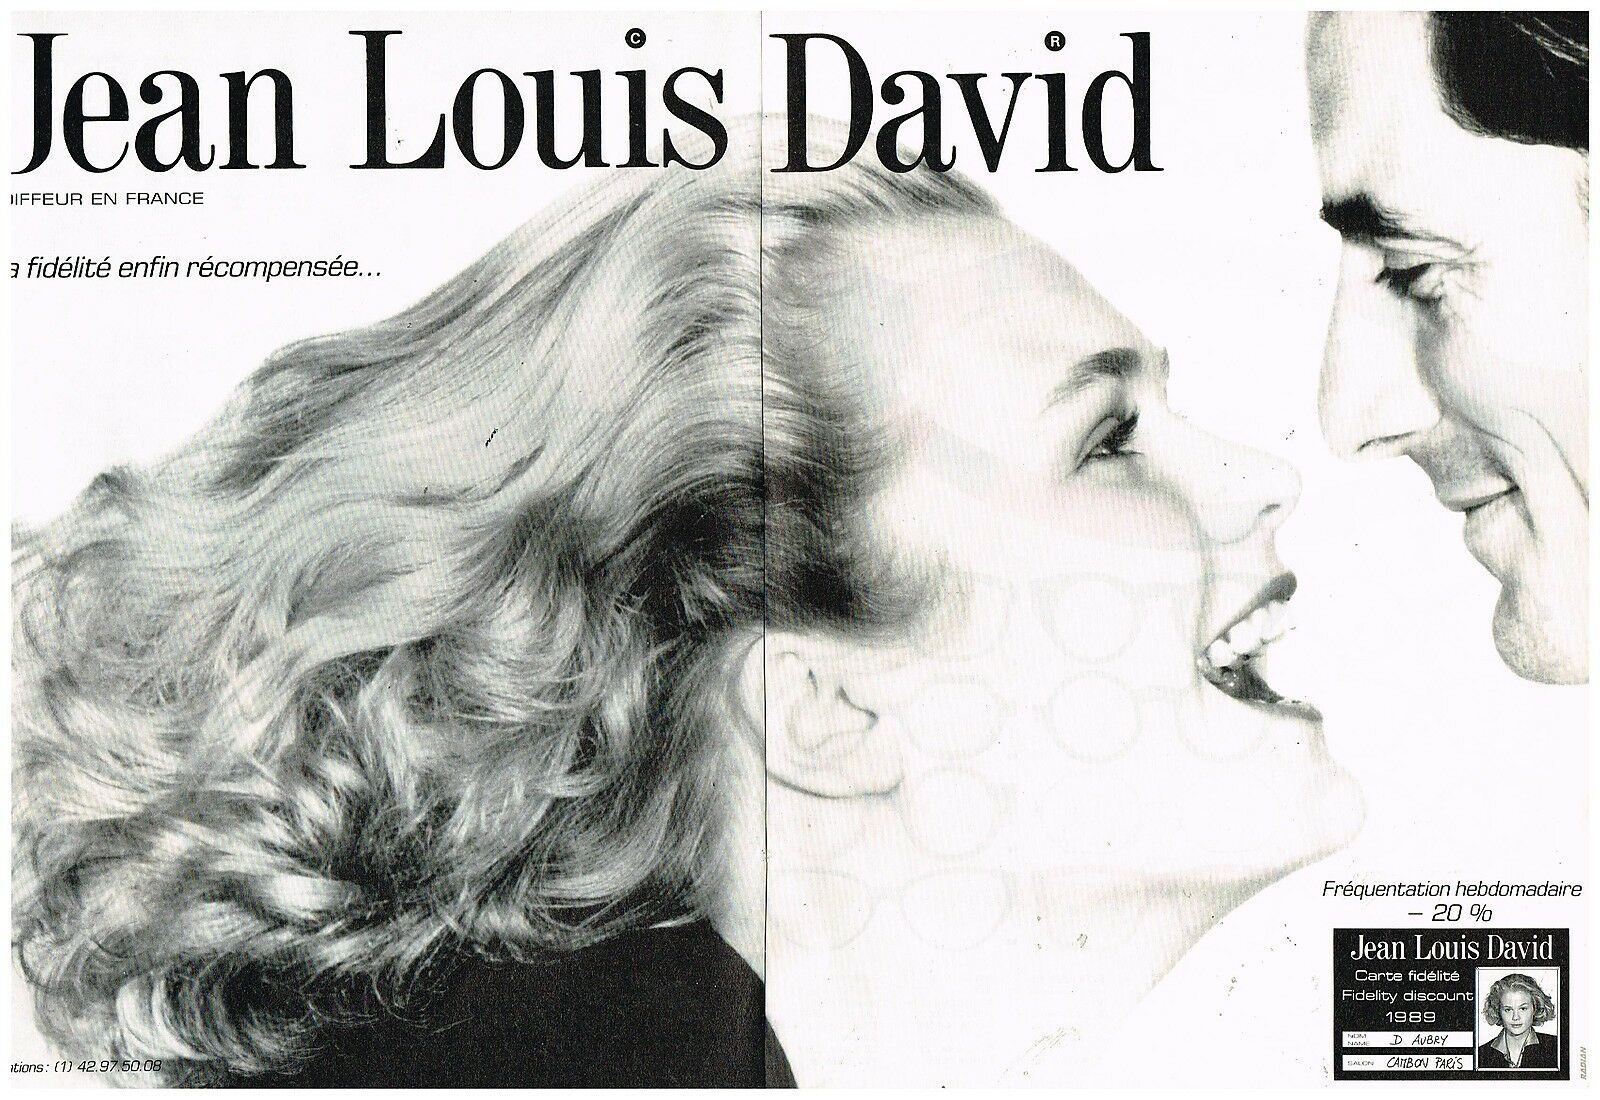 1989 salon de coiffure Jean-Louis David A2